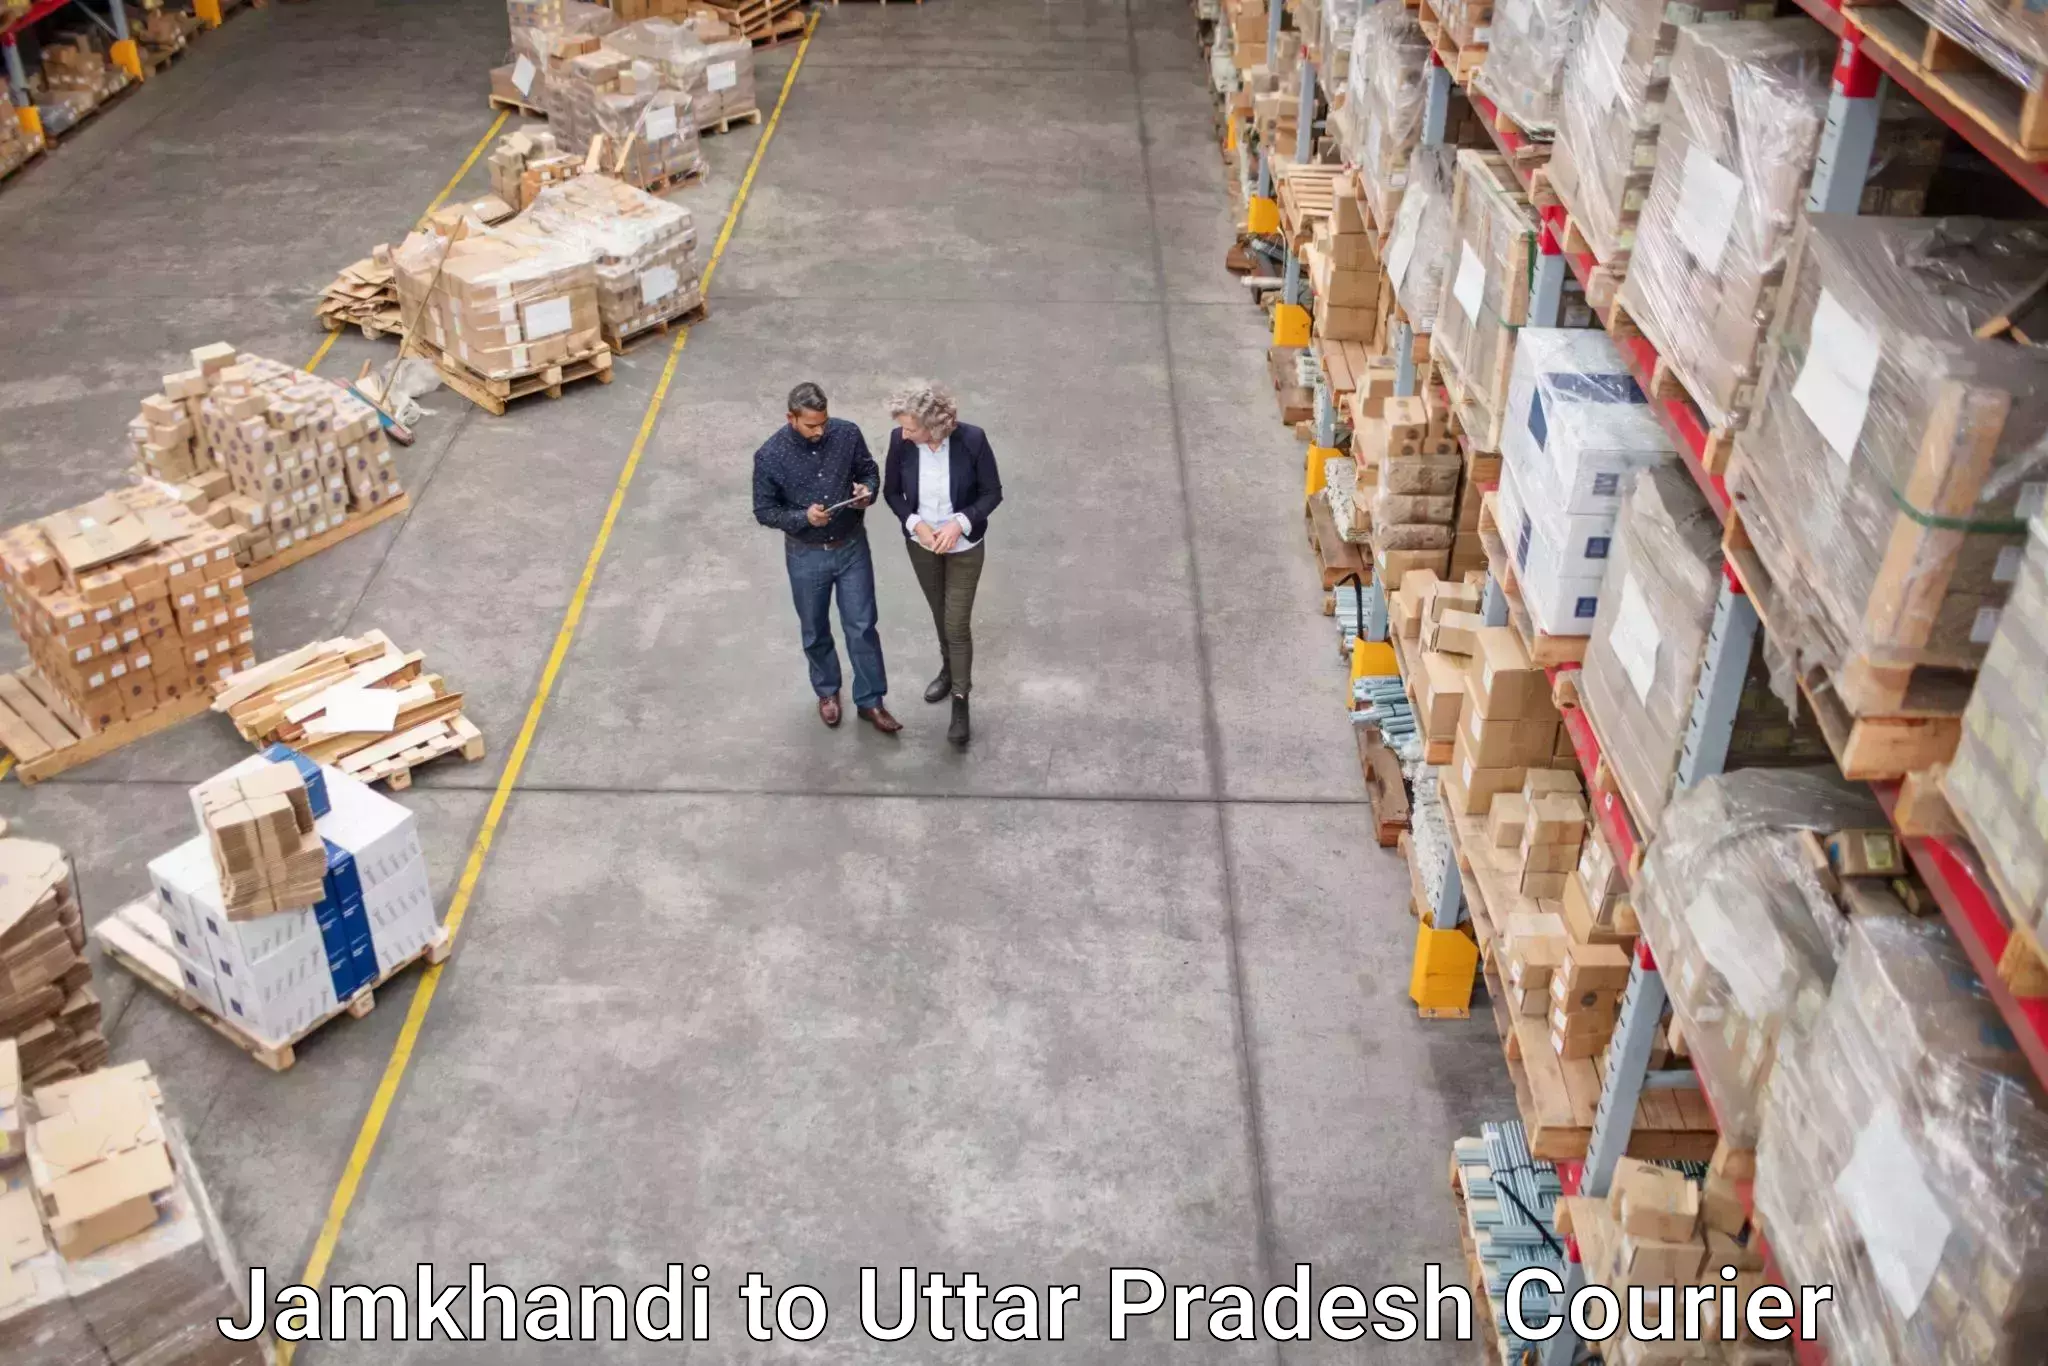 Express delivery network Jamkhandi to Uttar Pradesh